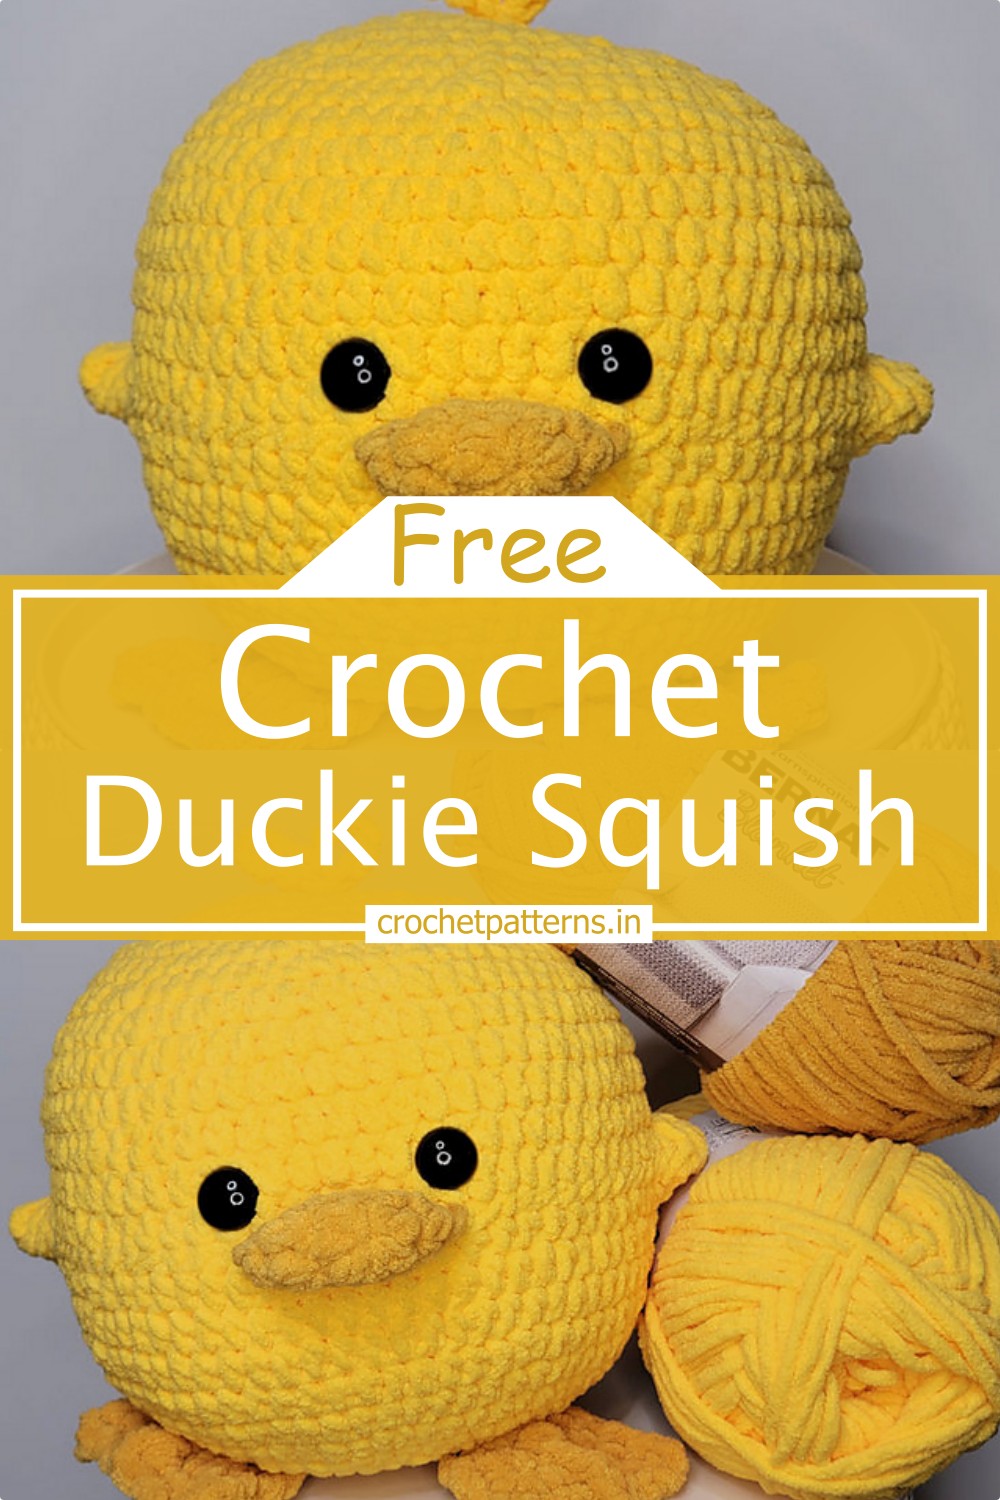 Crochet Duckie Squish